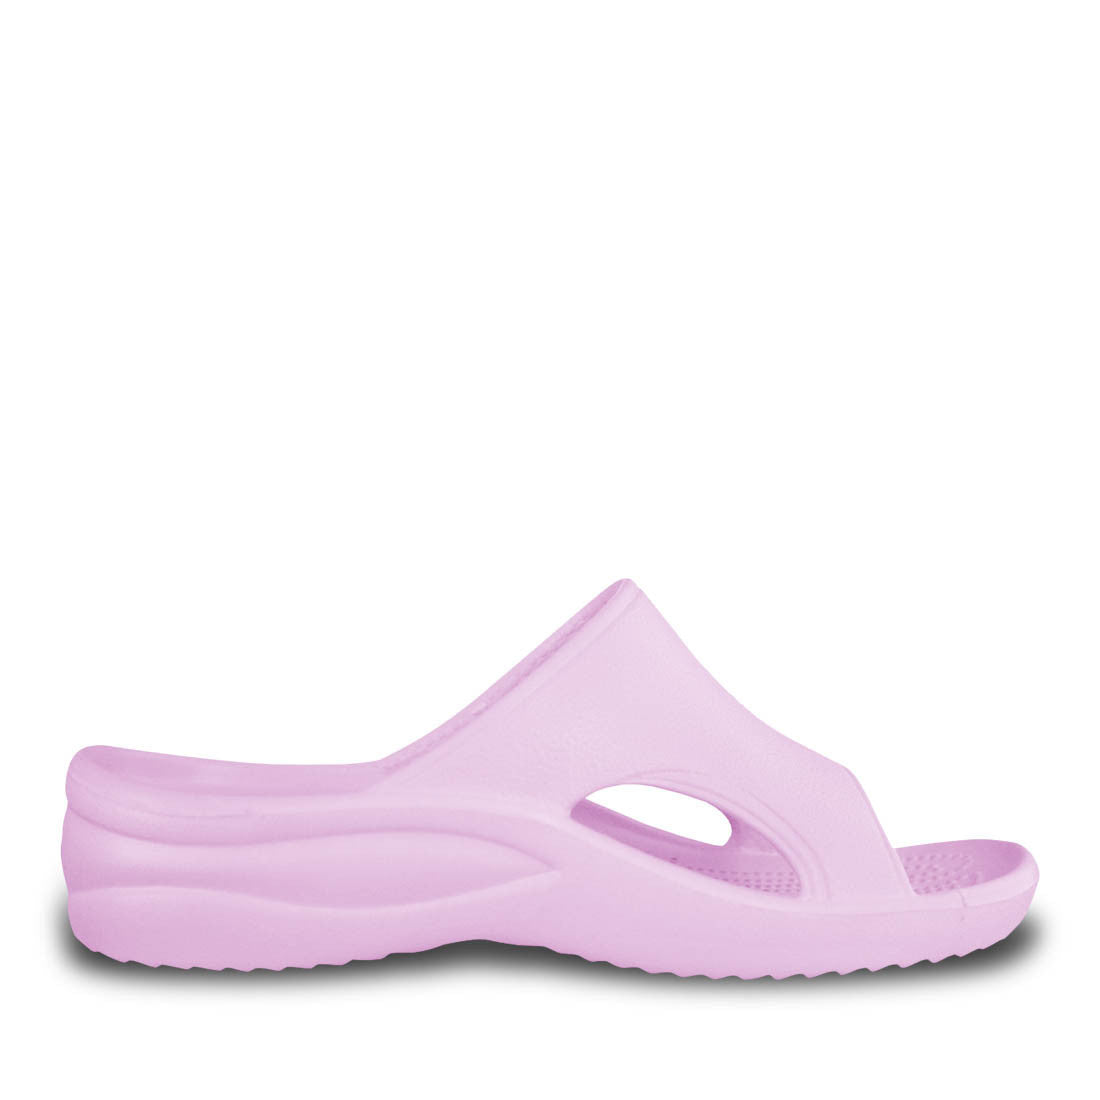 Image of Women's Slides - Soft Pink